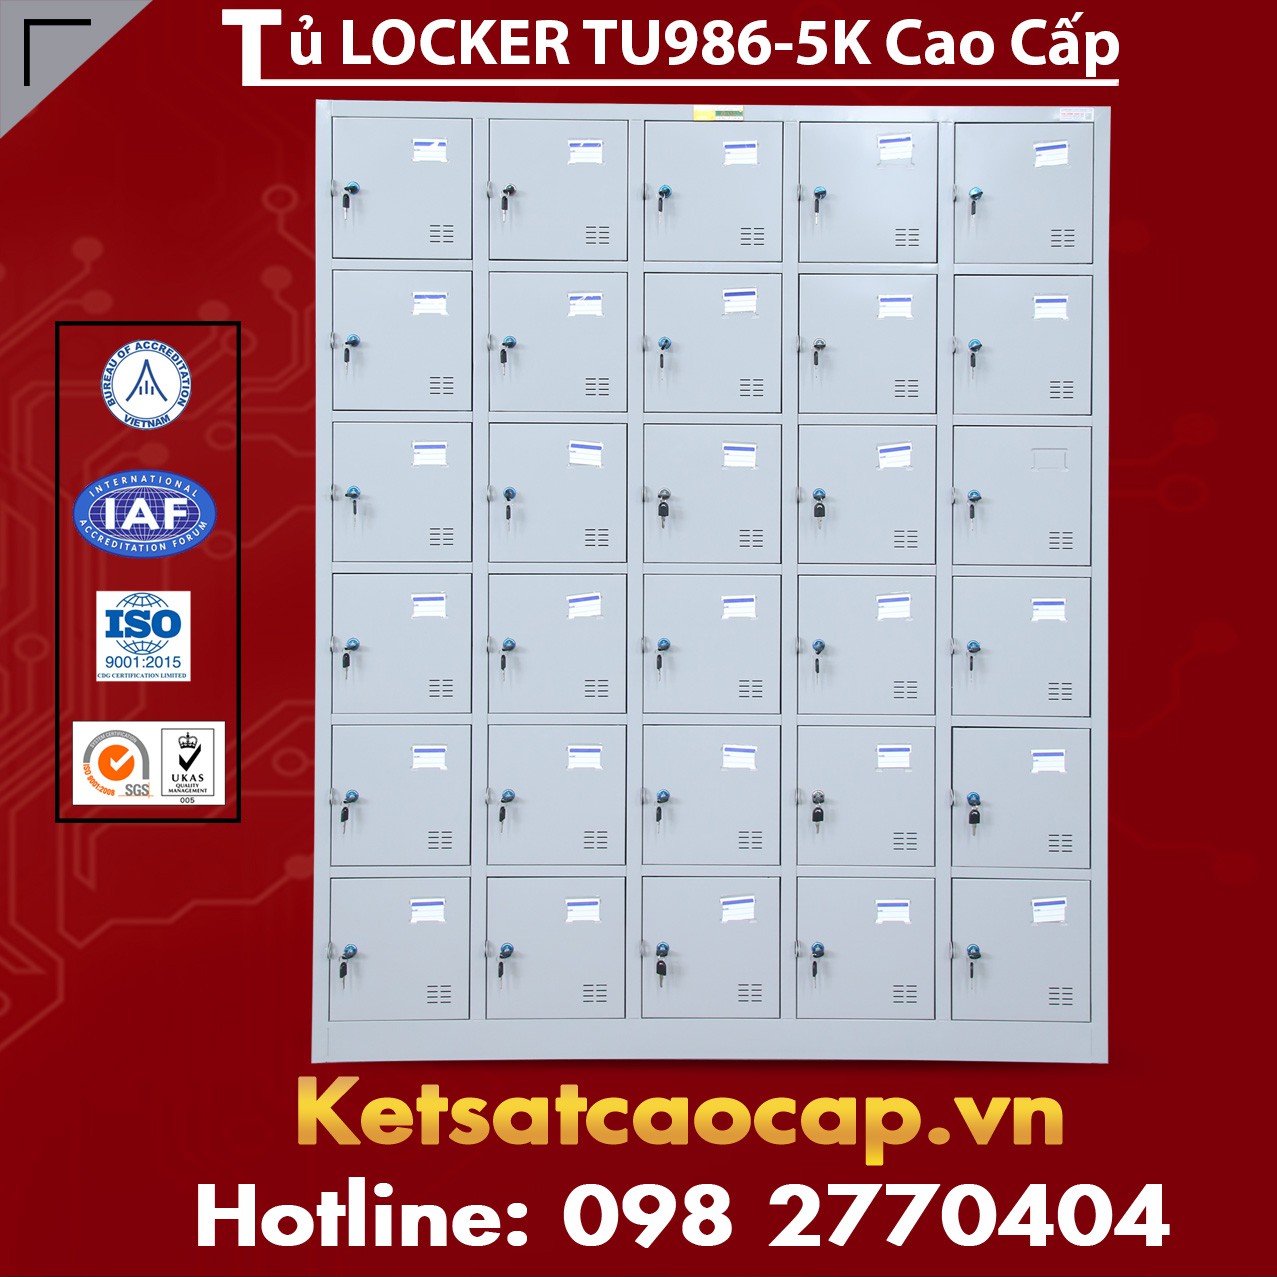 Tủ Locker TU986-5K